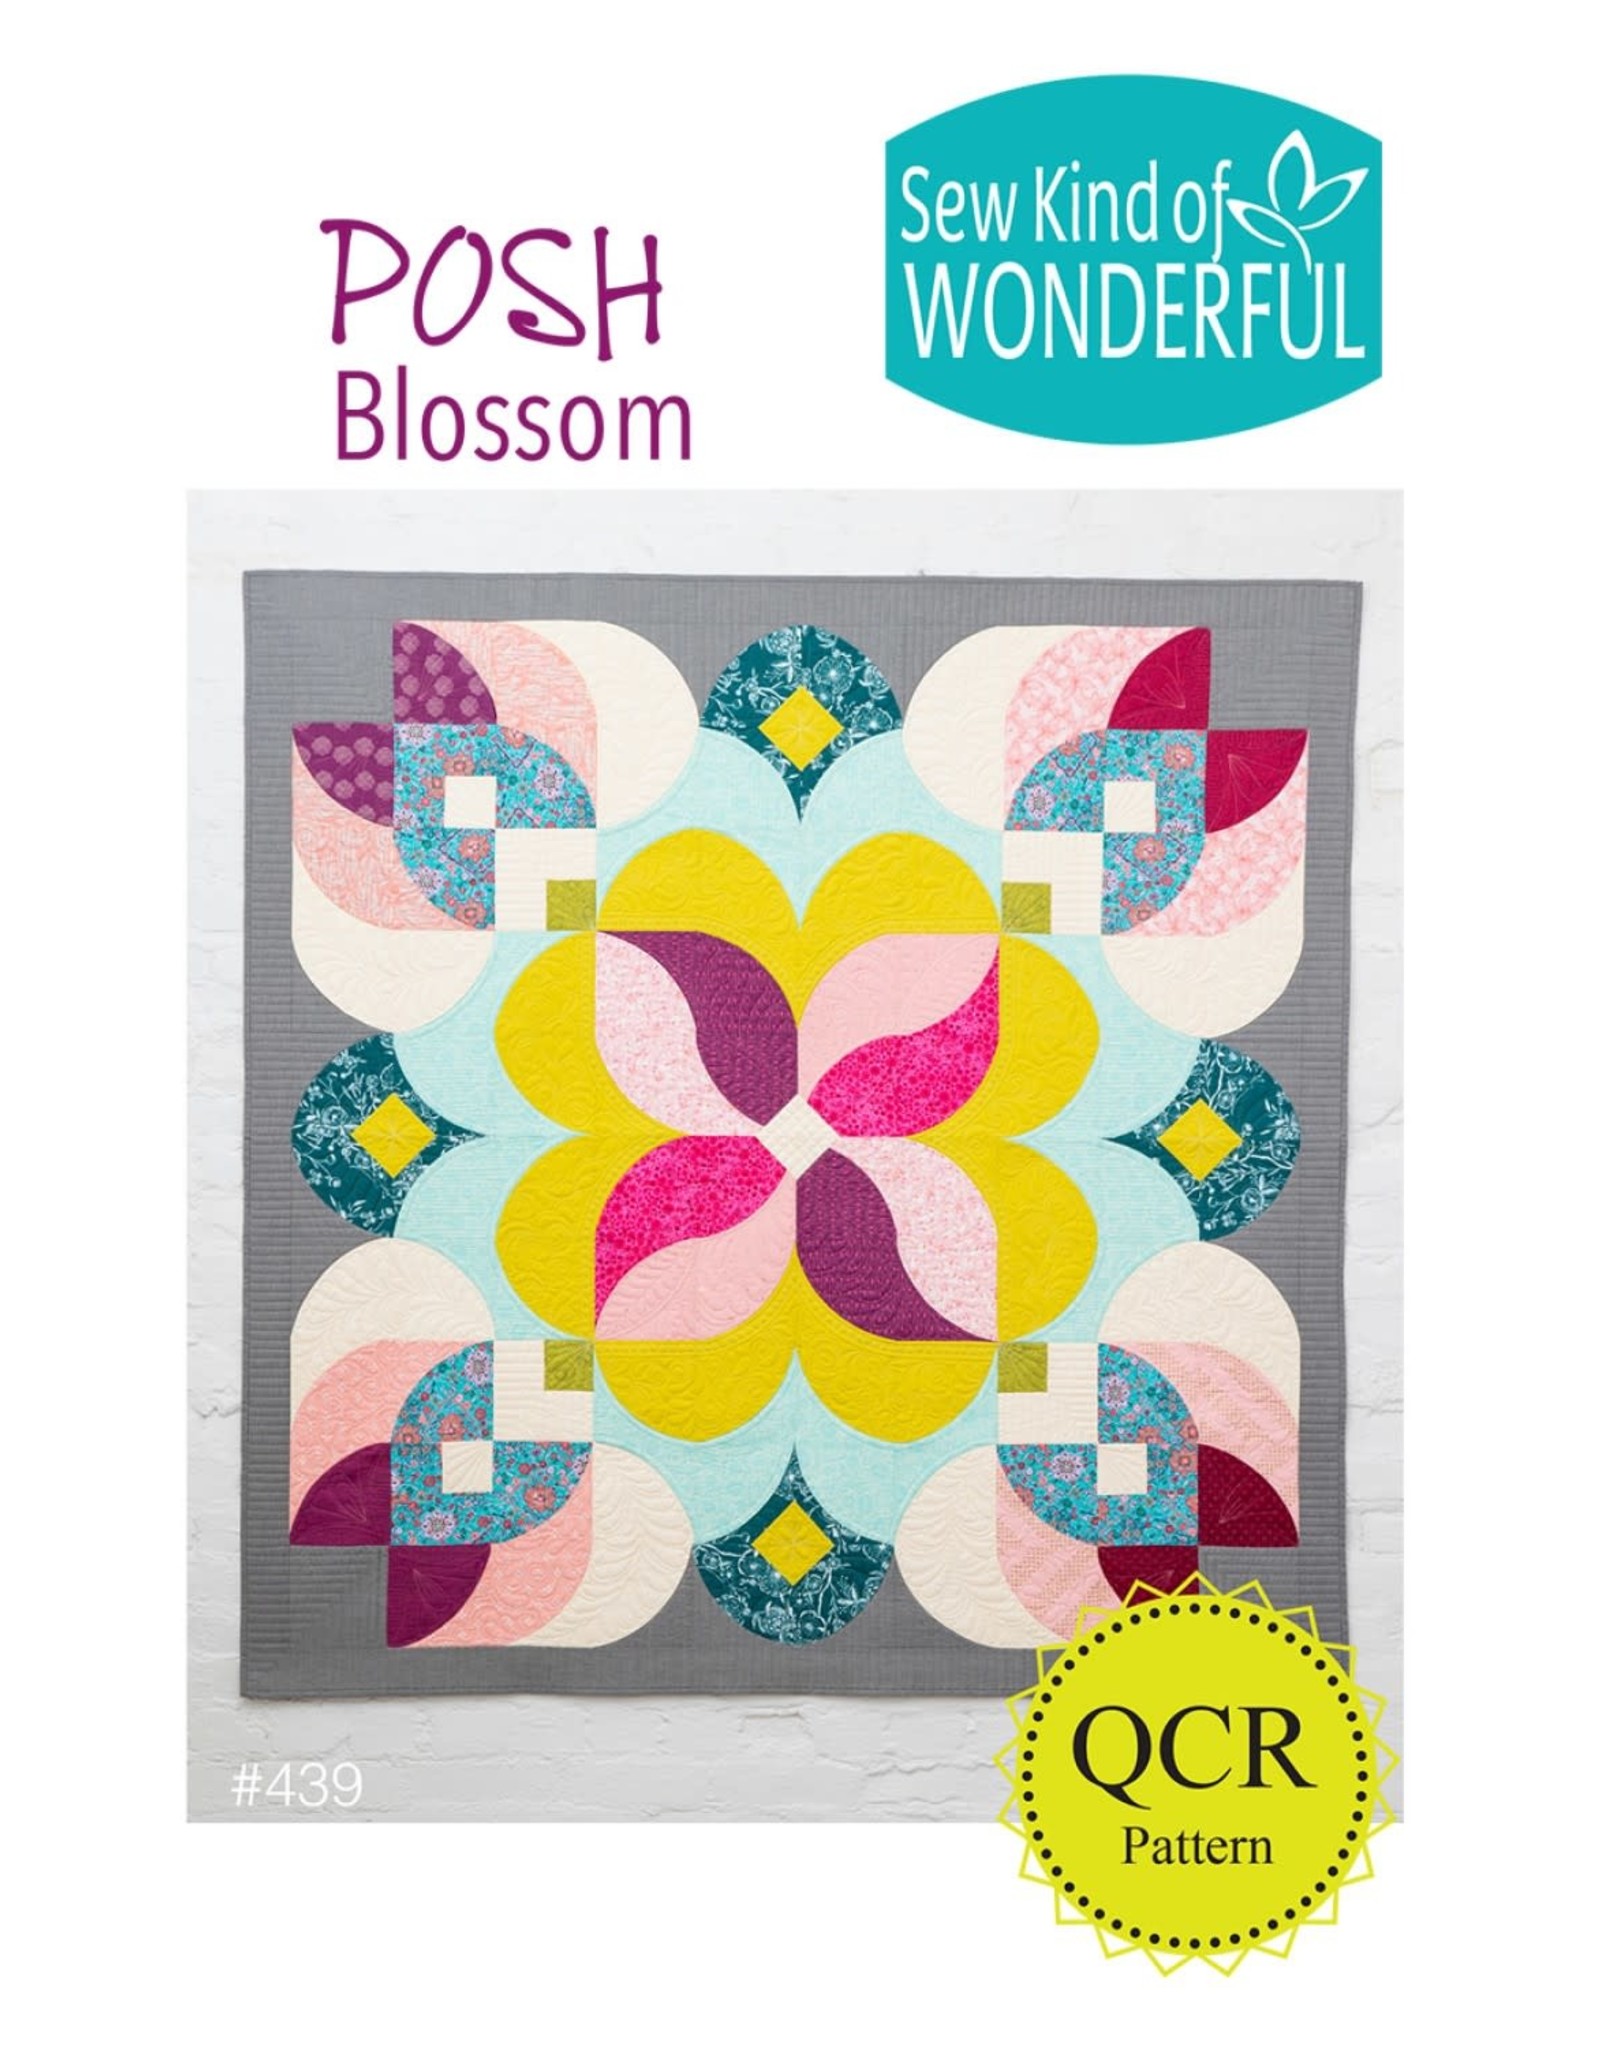 Sew Kind of Wonderful Sew Kind of Wonderful patroon - Posh Blossom